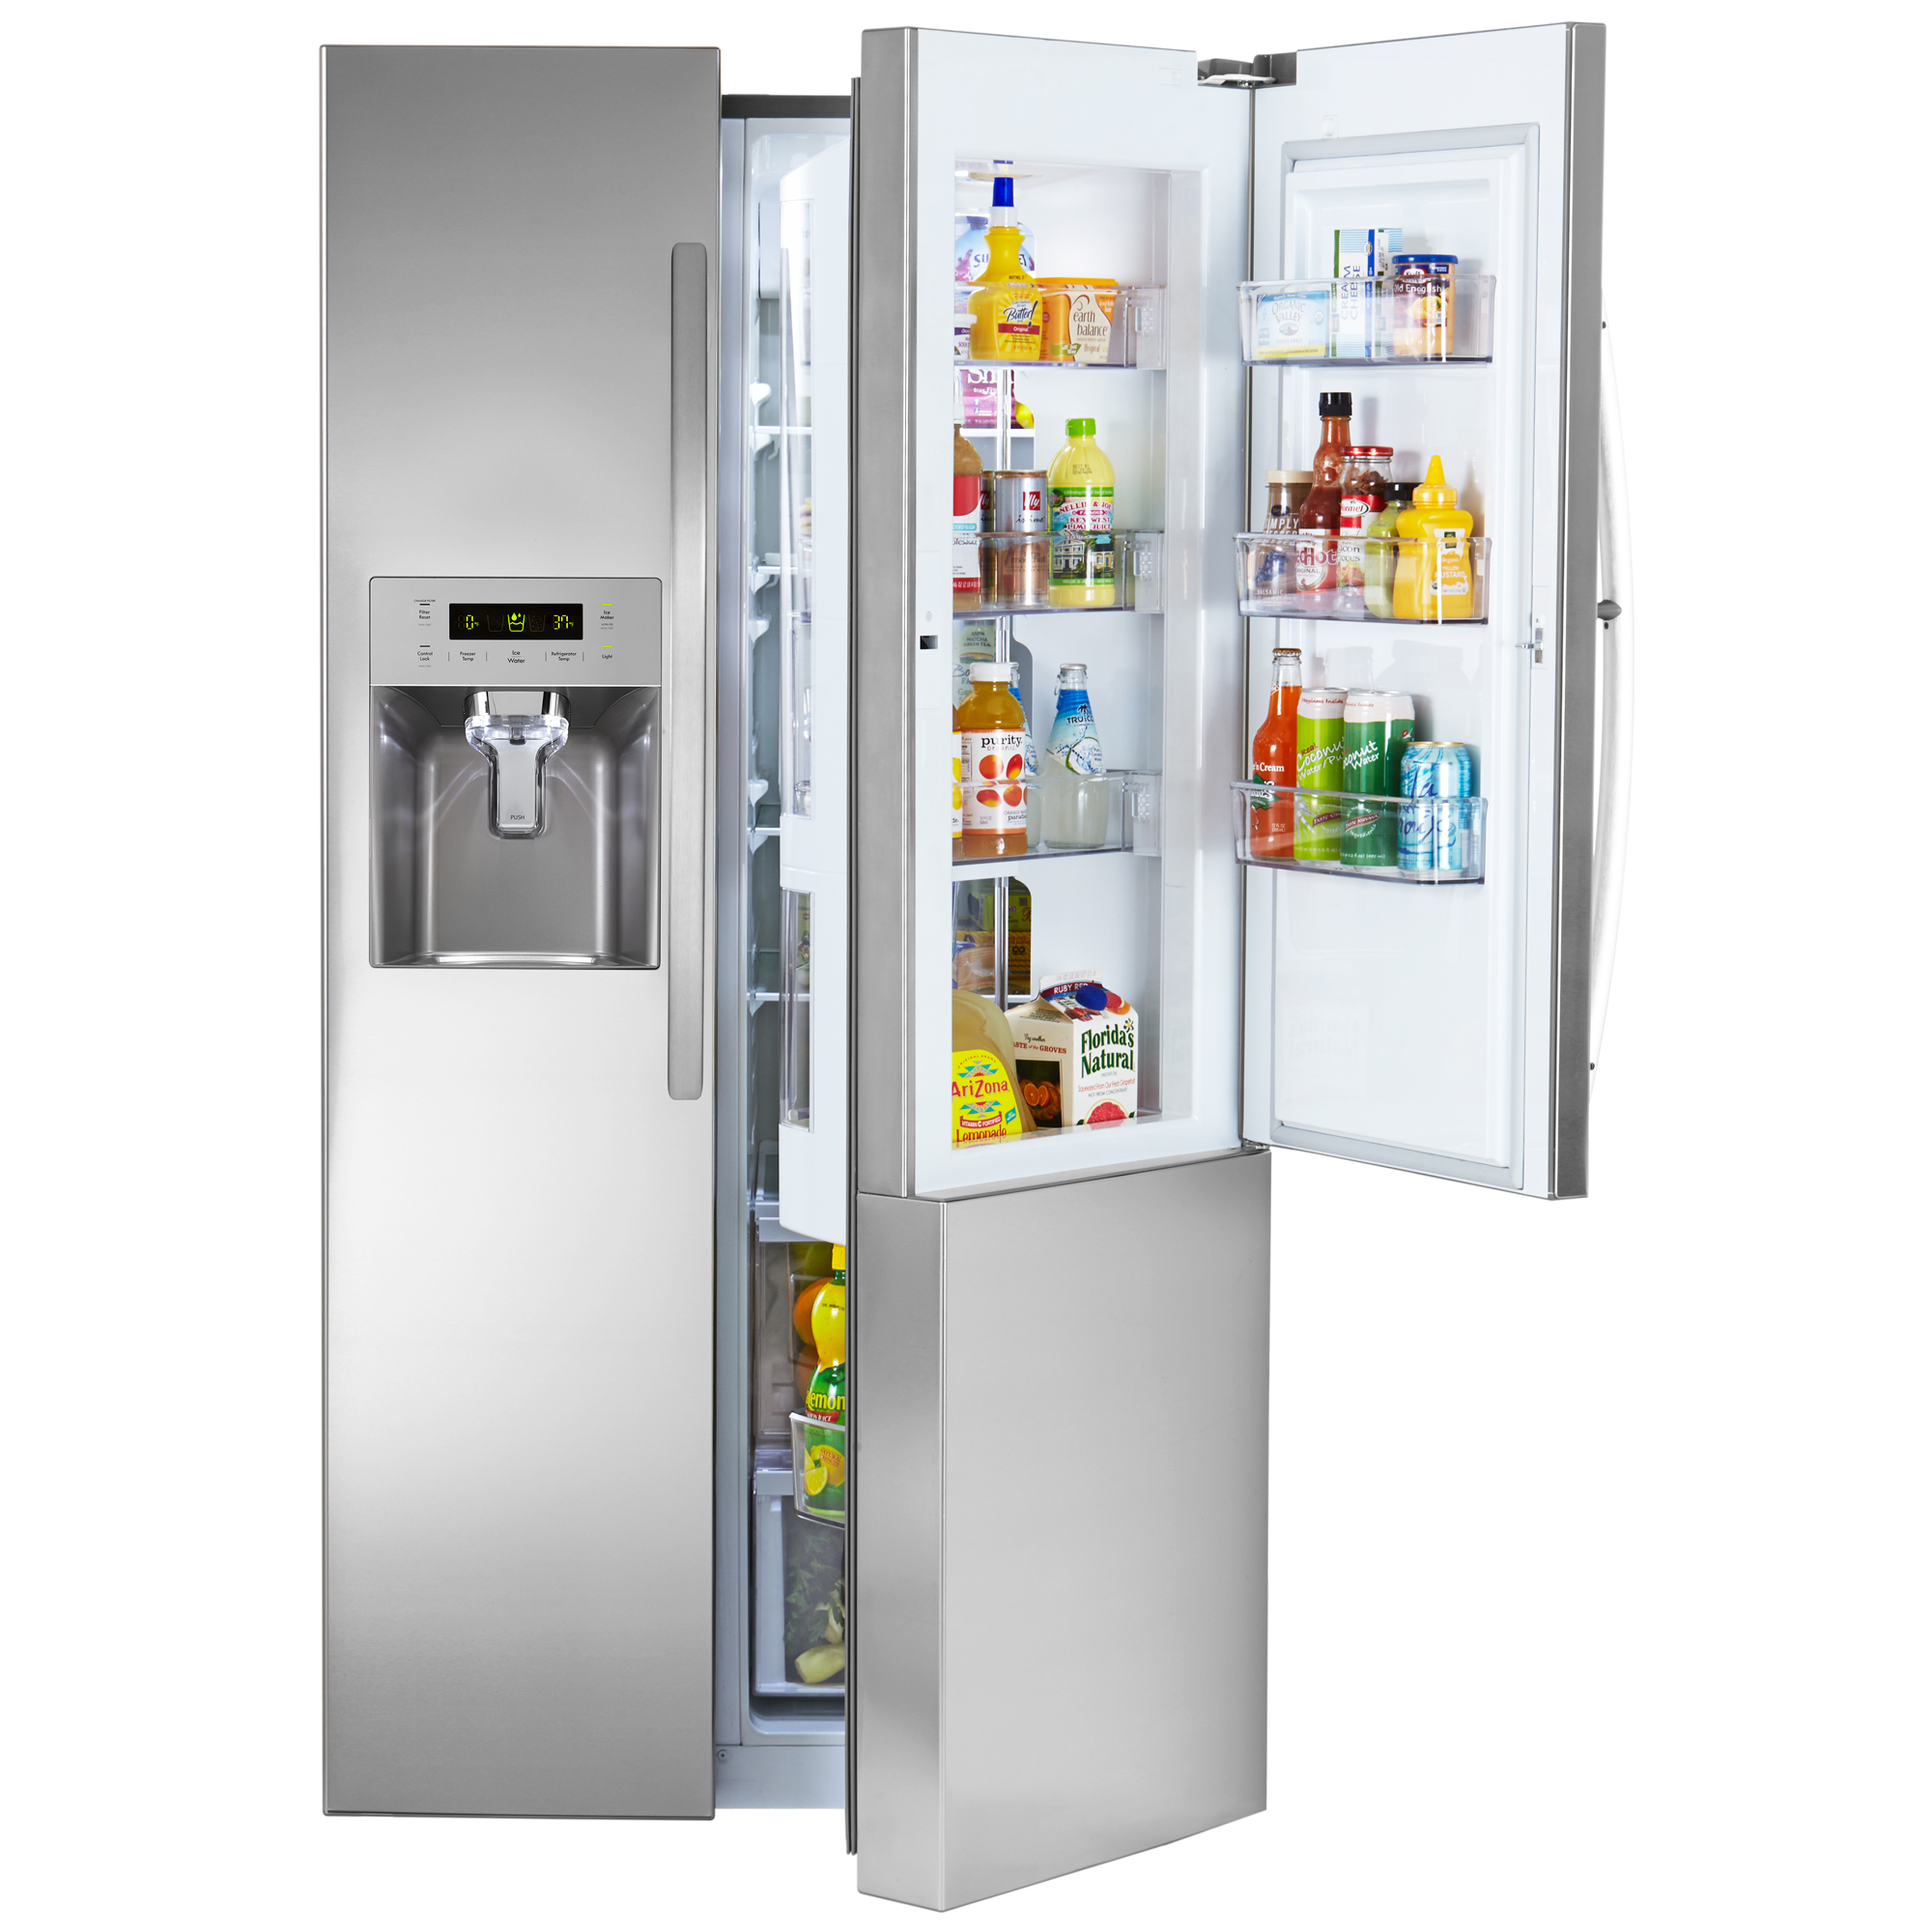 Kenmore 26.1 cu.ft. Capacity Side-by-Side Refrigerator with Grab-N-Go Door